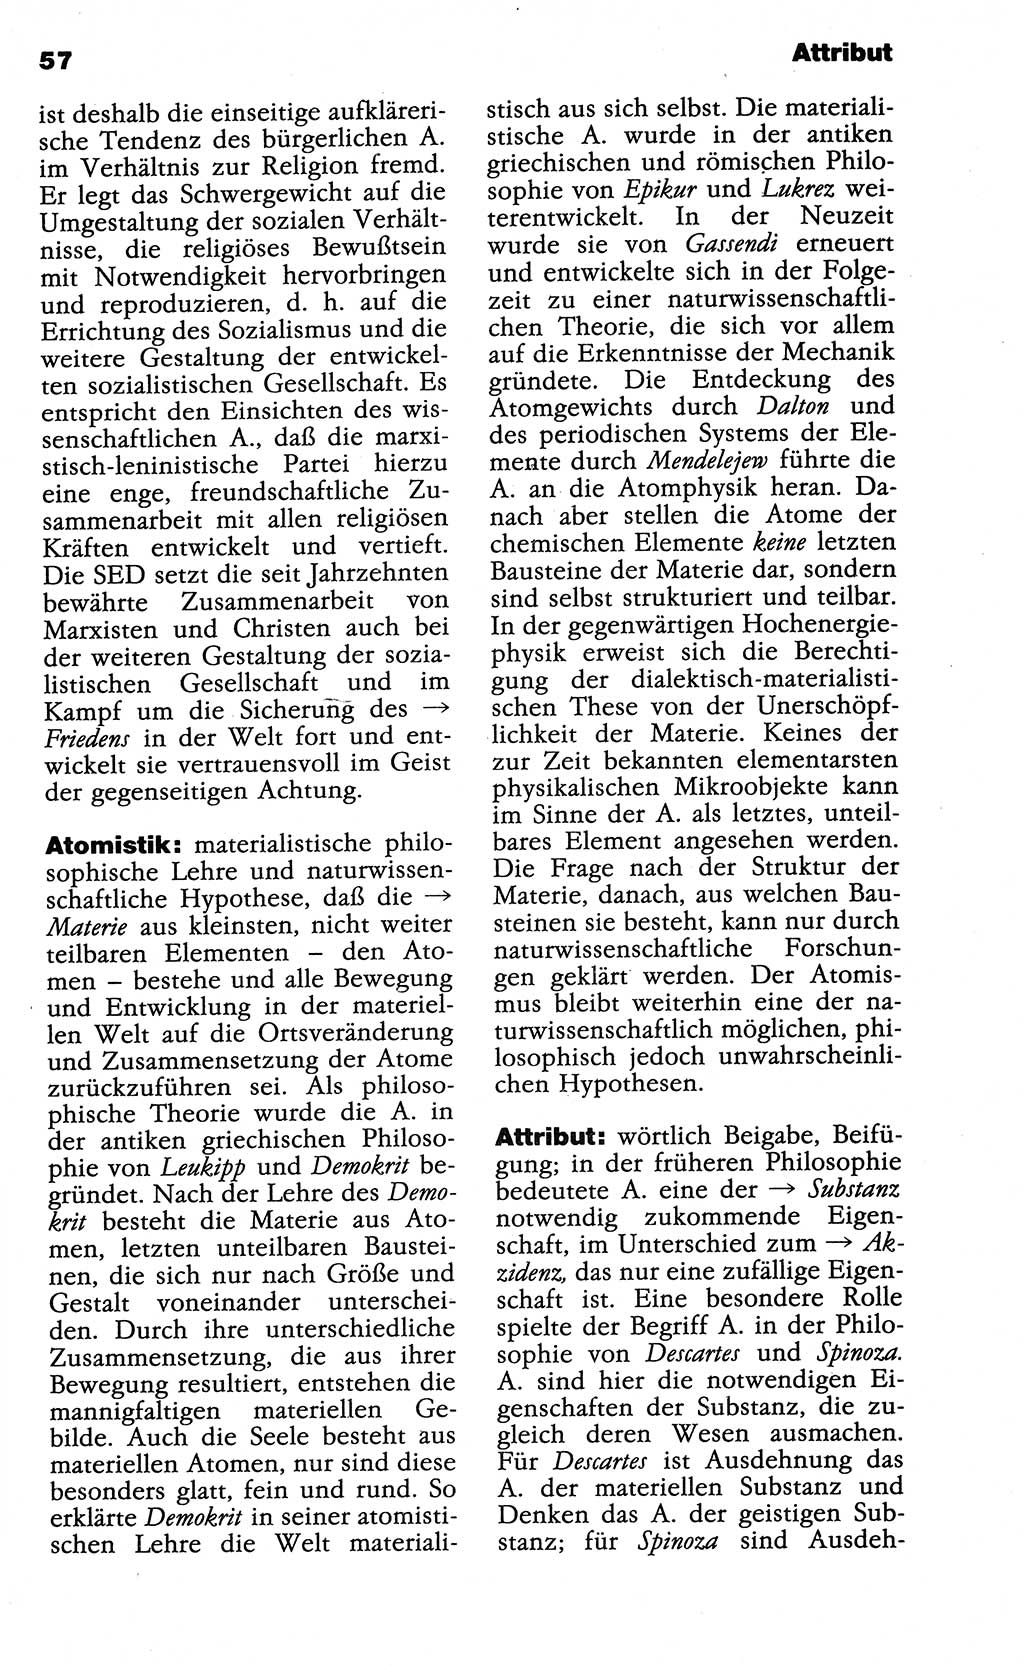 Wörterbuch der marxistisch-leninistischen Philosophie [Deutsche Demokratische Republik (DDR)] 1985, Seite 57 (Wb. ML Phil. DDR 1985, S. 57)